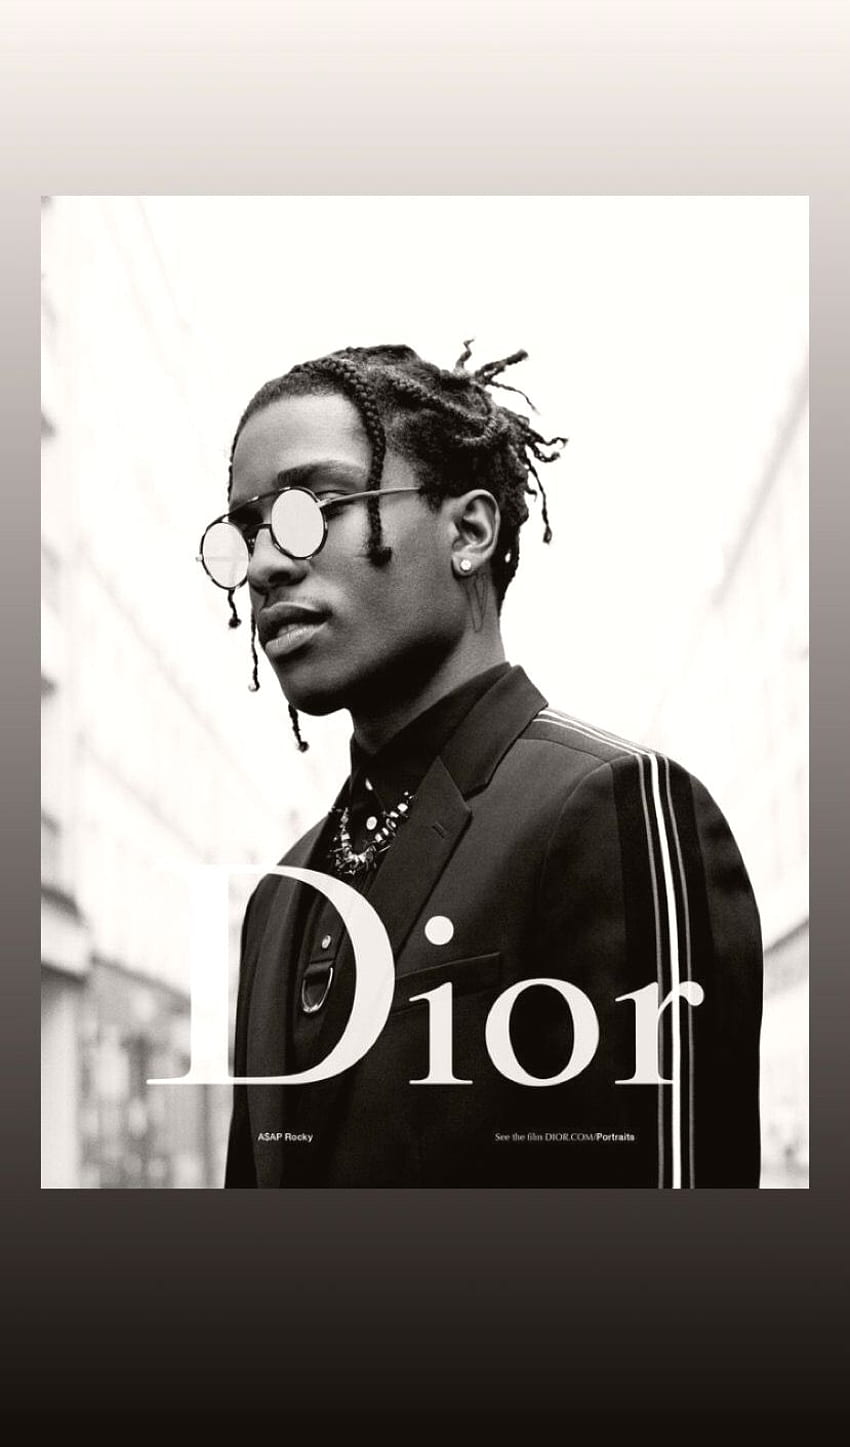 Dior Logo Black and White  Brands Logos